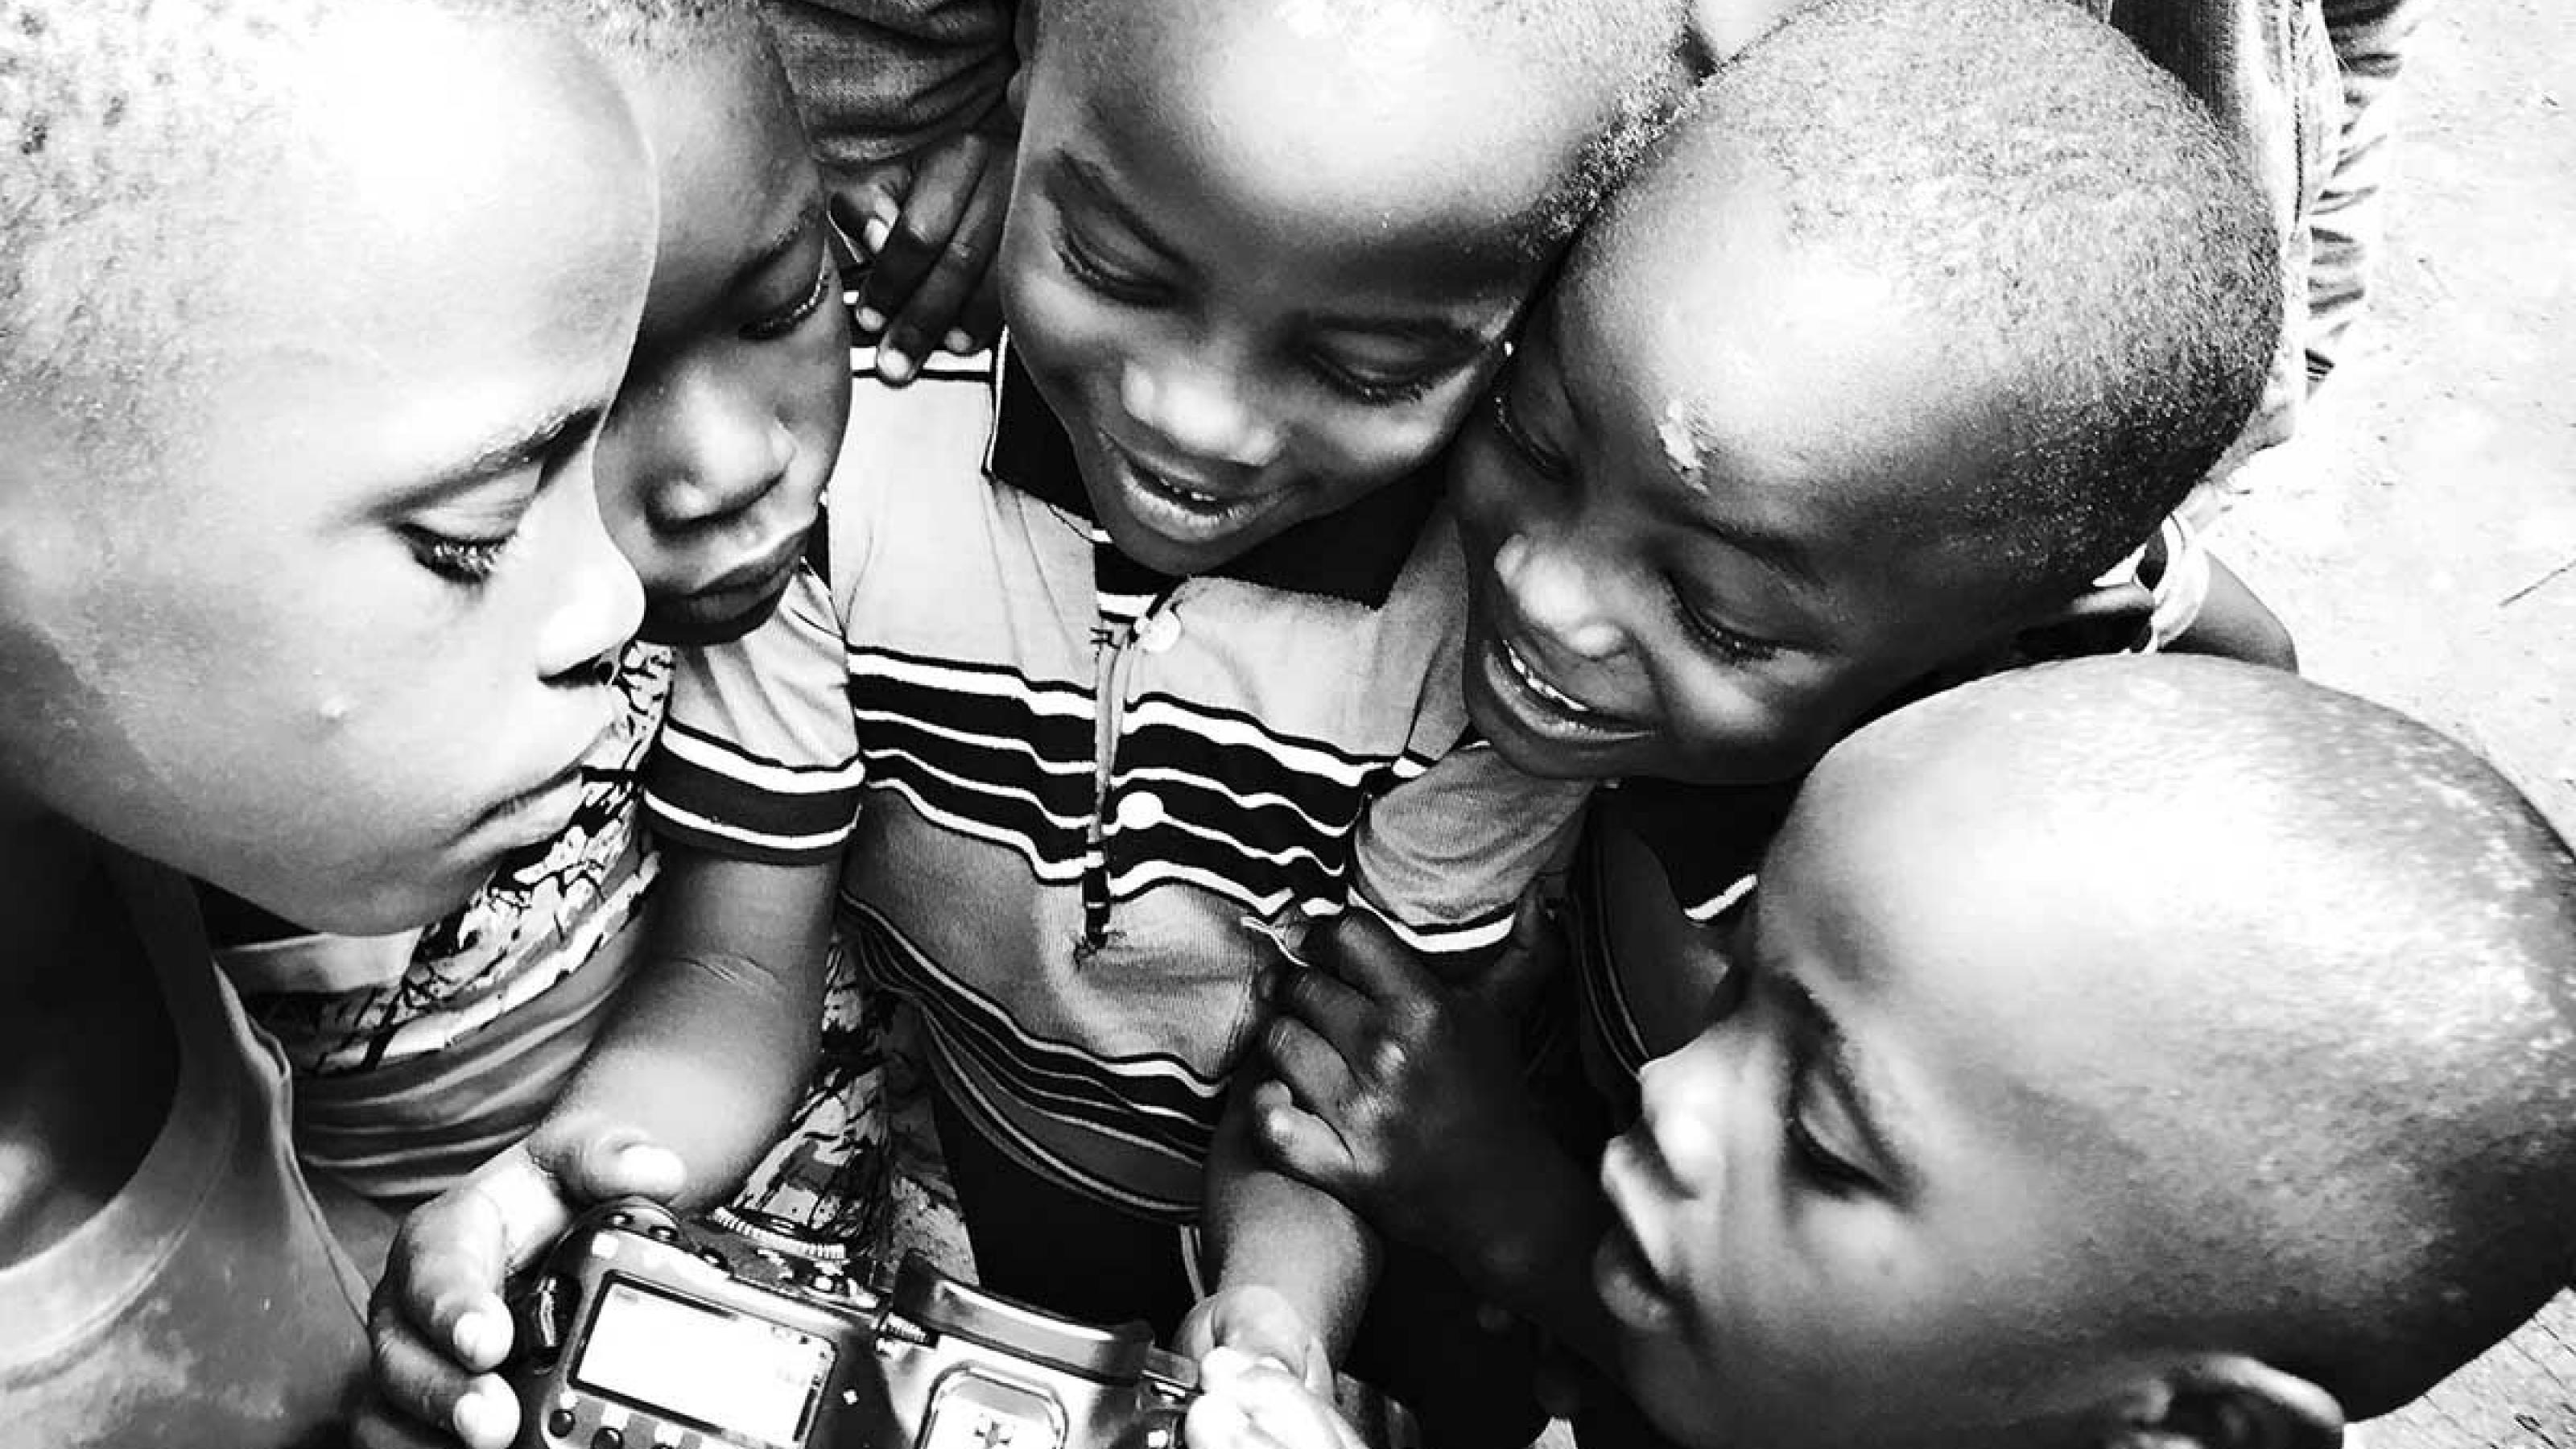 5 Kinder stehen kreisförmig um eine DSLR-Kamera herum und betrachten neugierig, was darauf zu sehen ist.